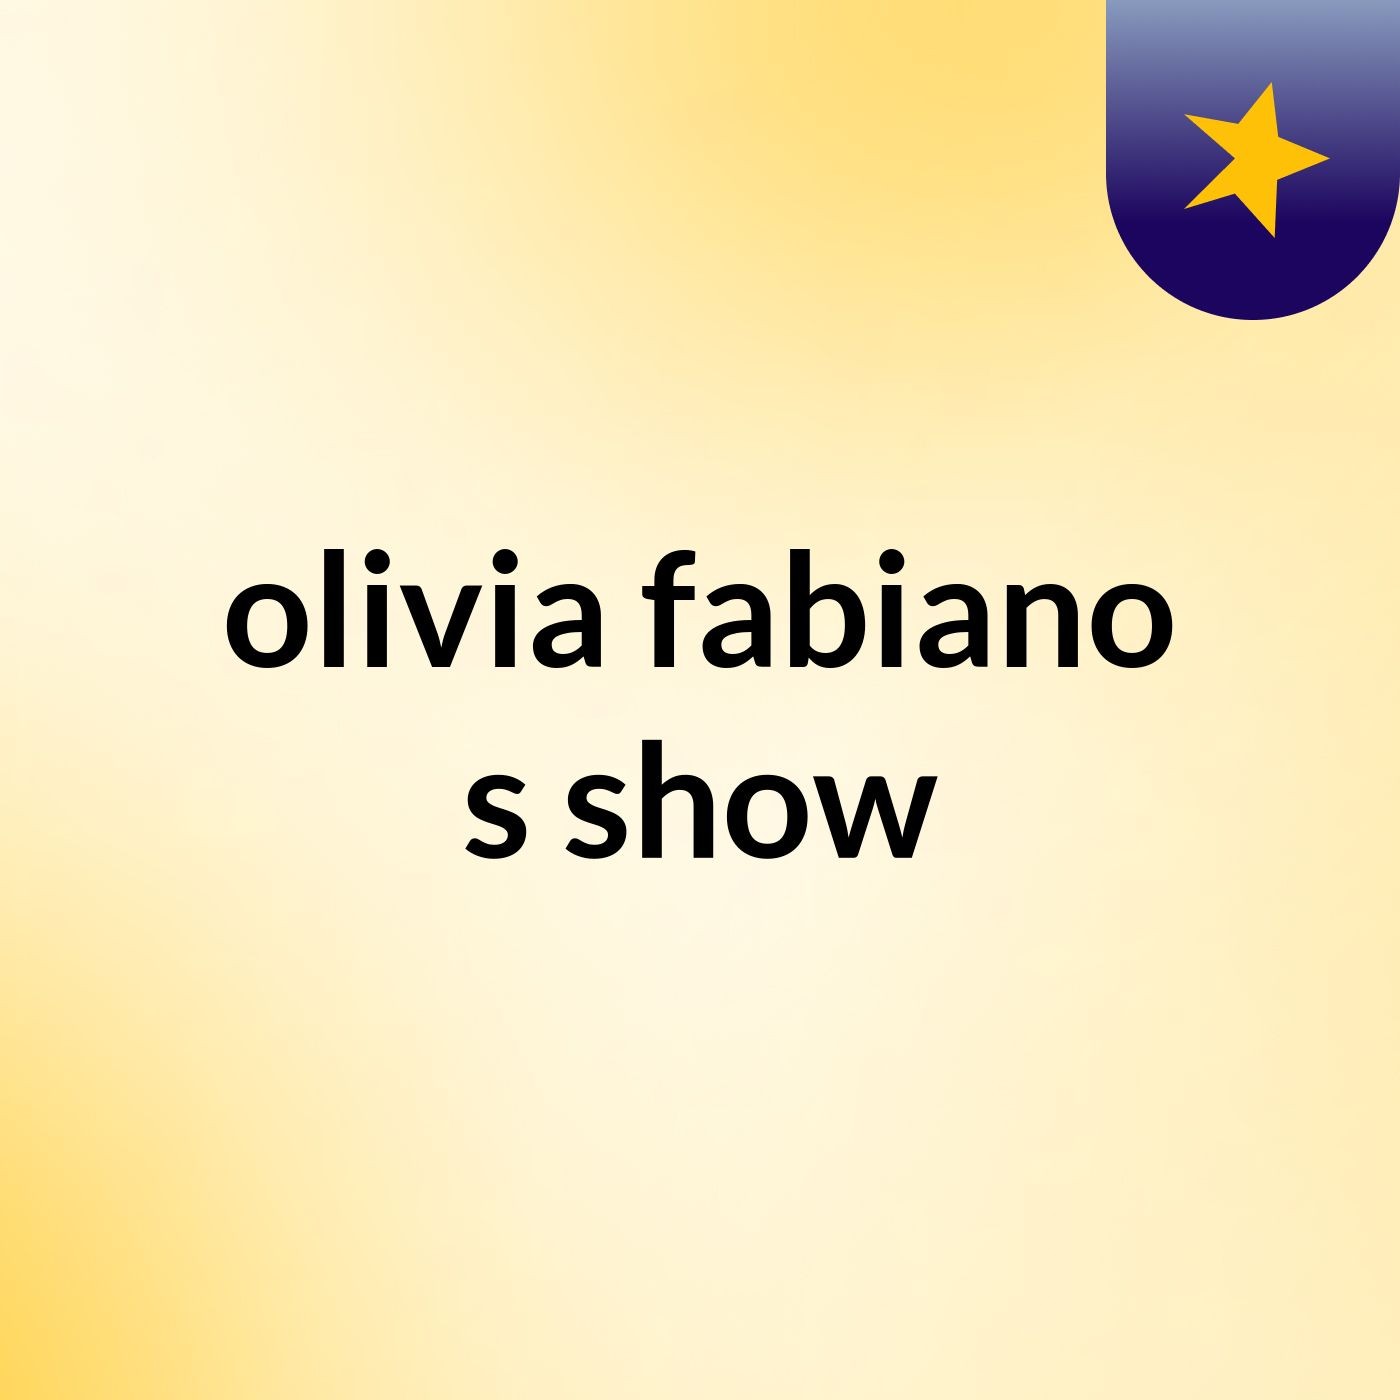 olivia fabiano's show